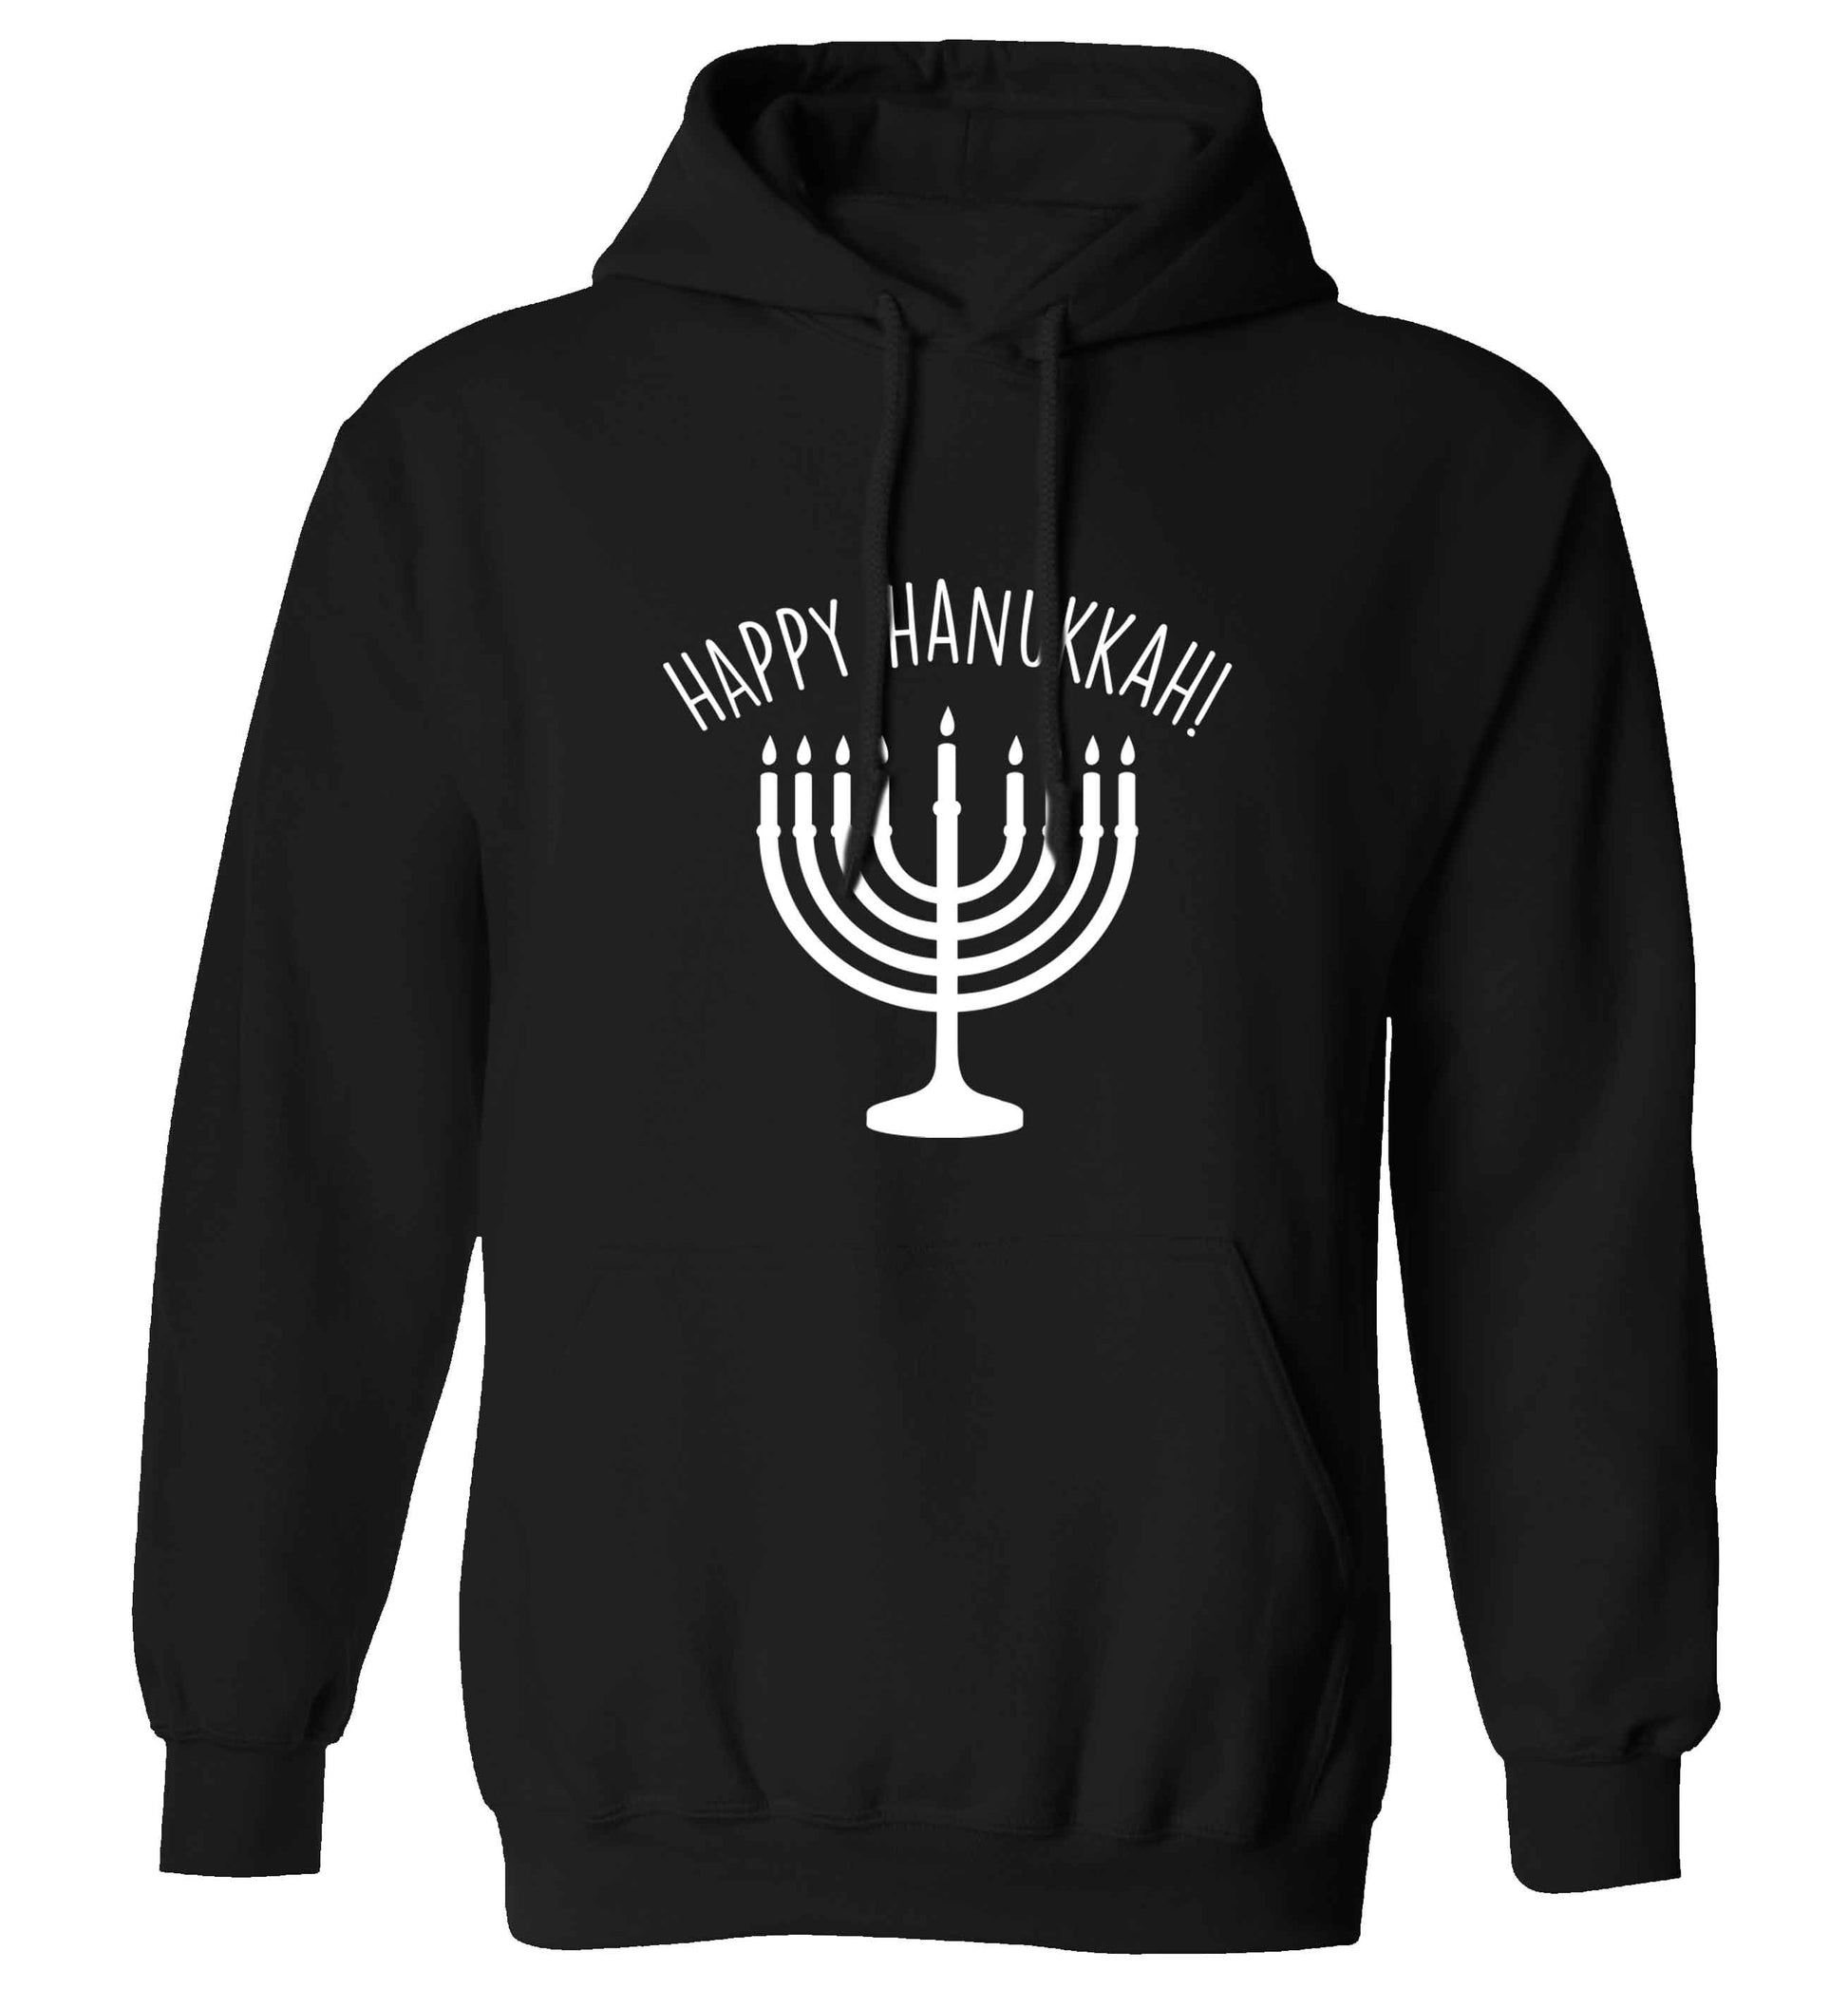 Happy hanukkah adults unisex black hoodie 2XL